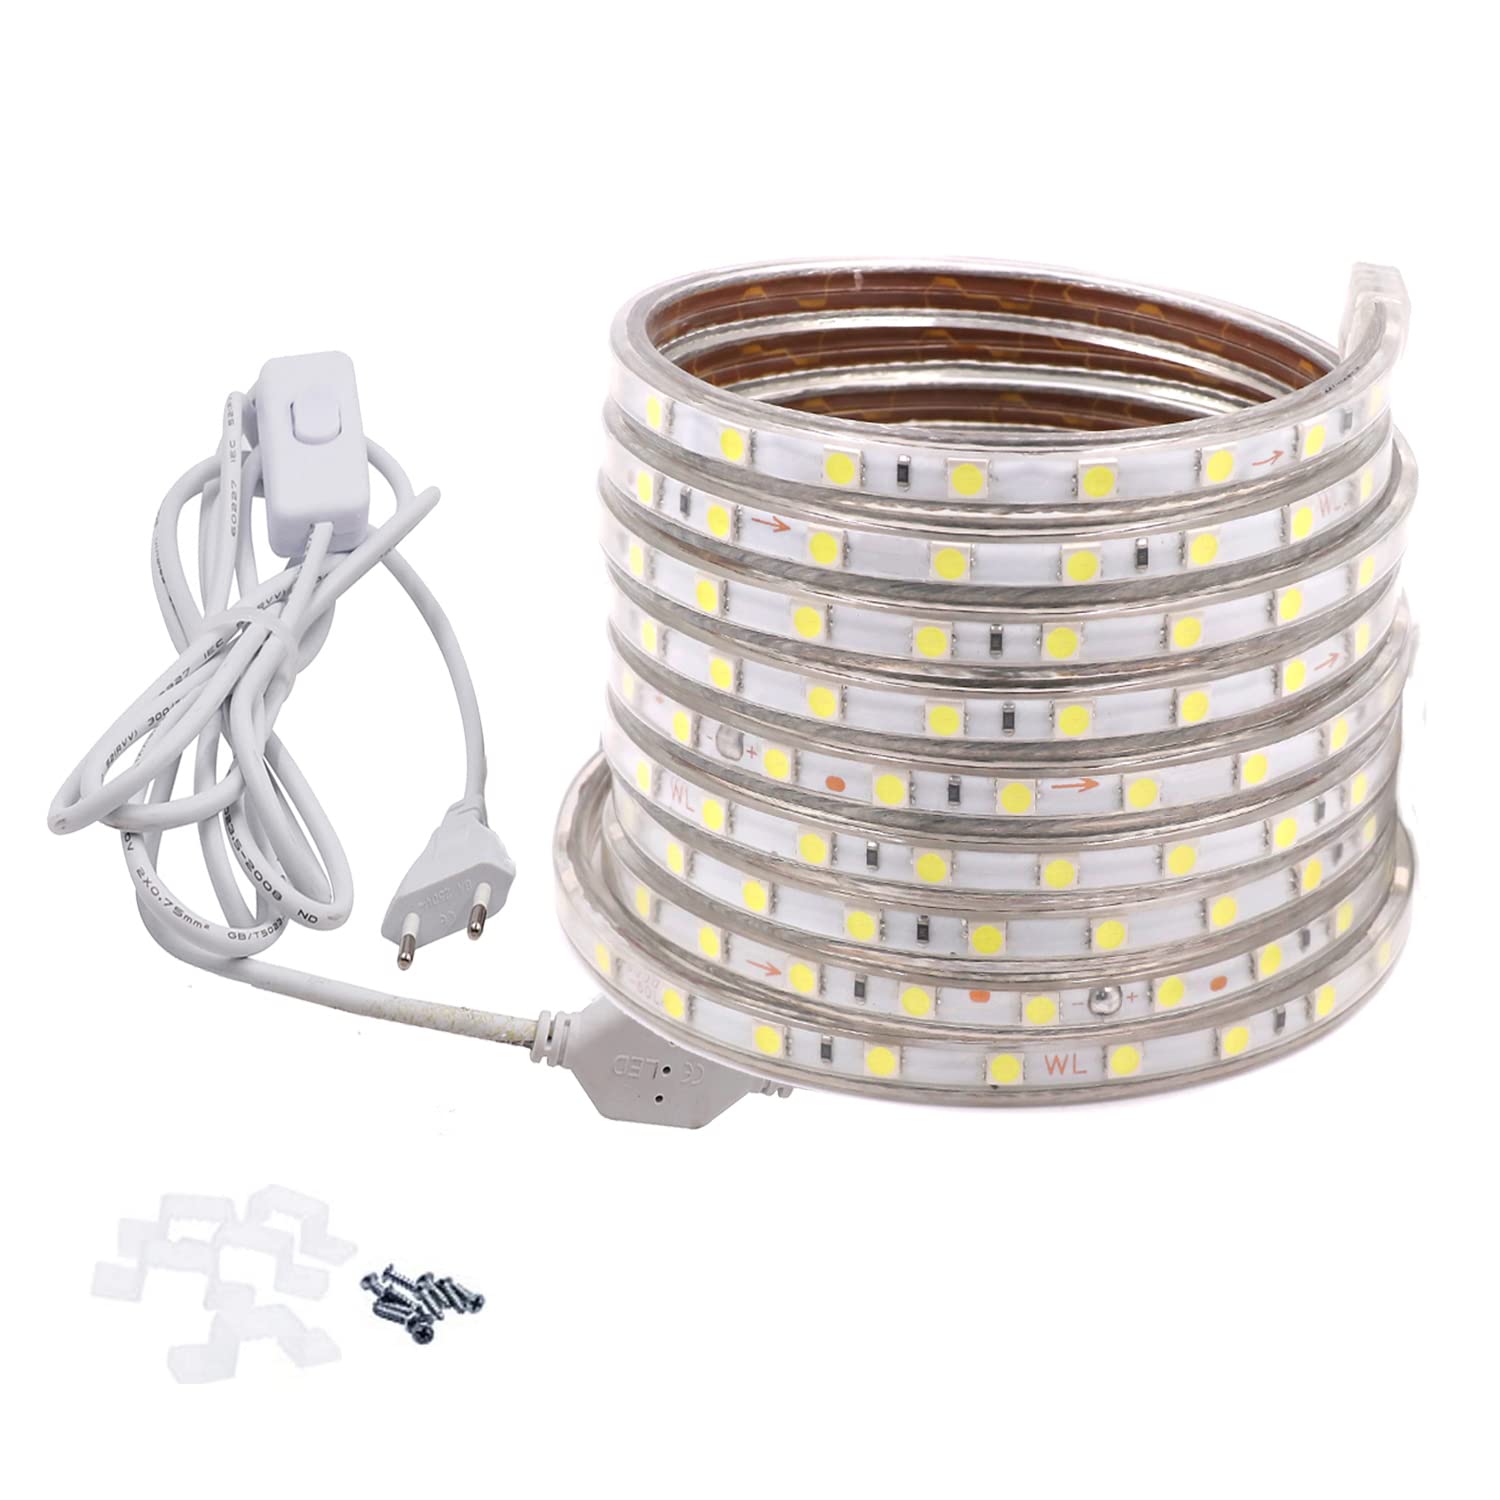 FOLGEMIR 5m Kalt Weiß LED Band mit Schalter, 220V 230V Lichtleiste, 60 Leds/m Strip, IP65 Lichtschlauch, milde Hintergrundbeleuchtung